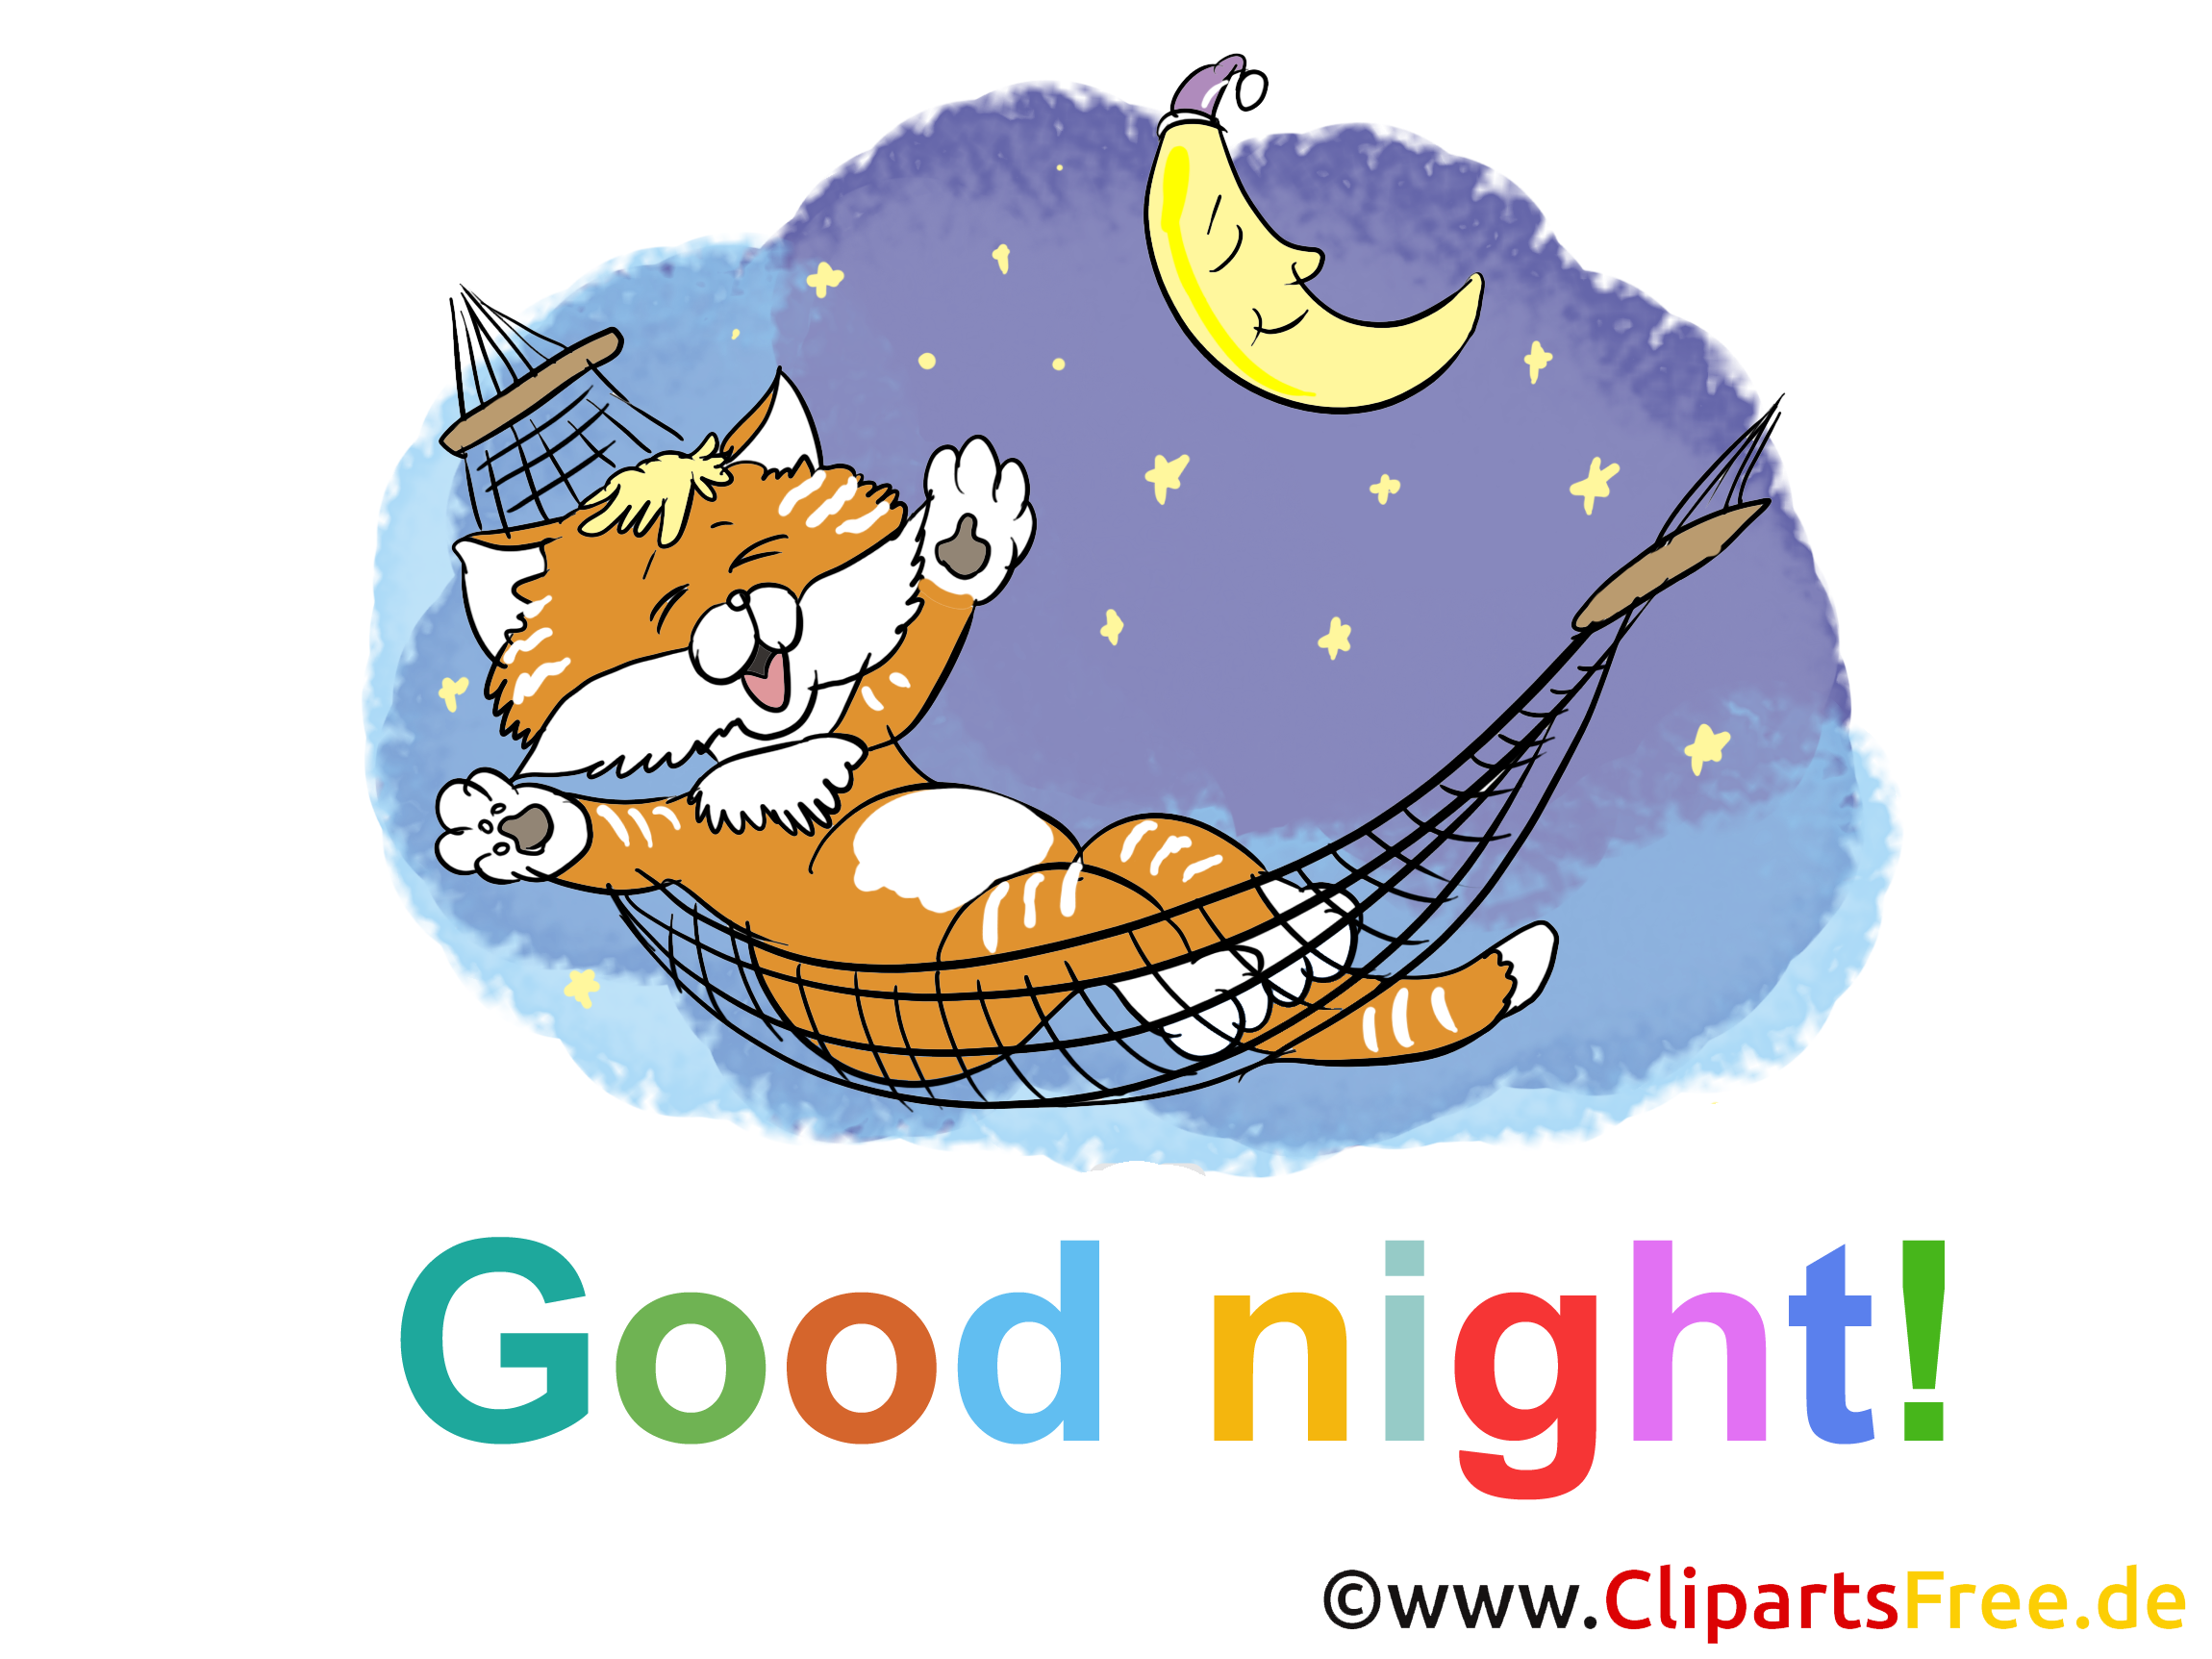 Chat image gratuite - Bonne nuit illustration